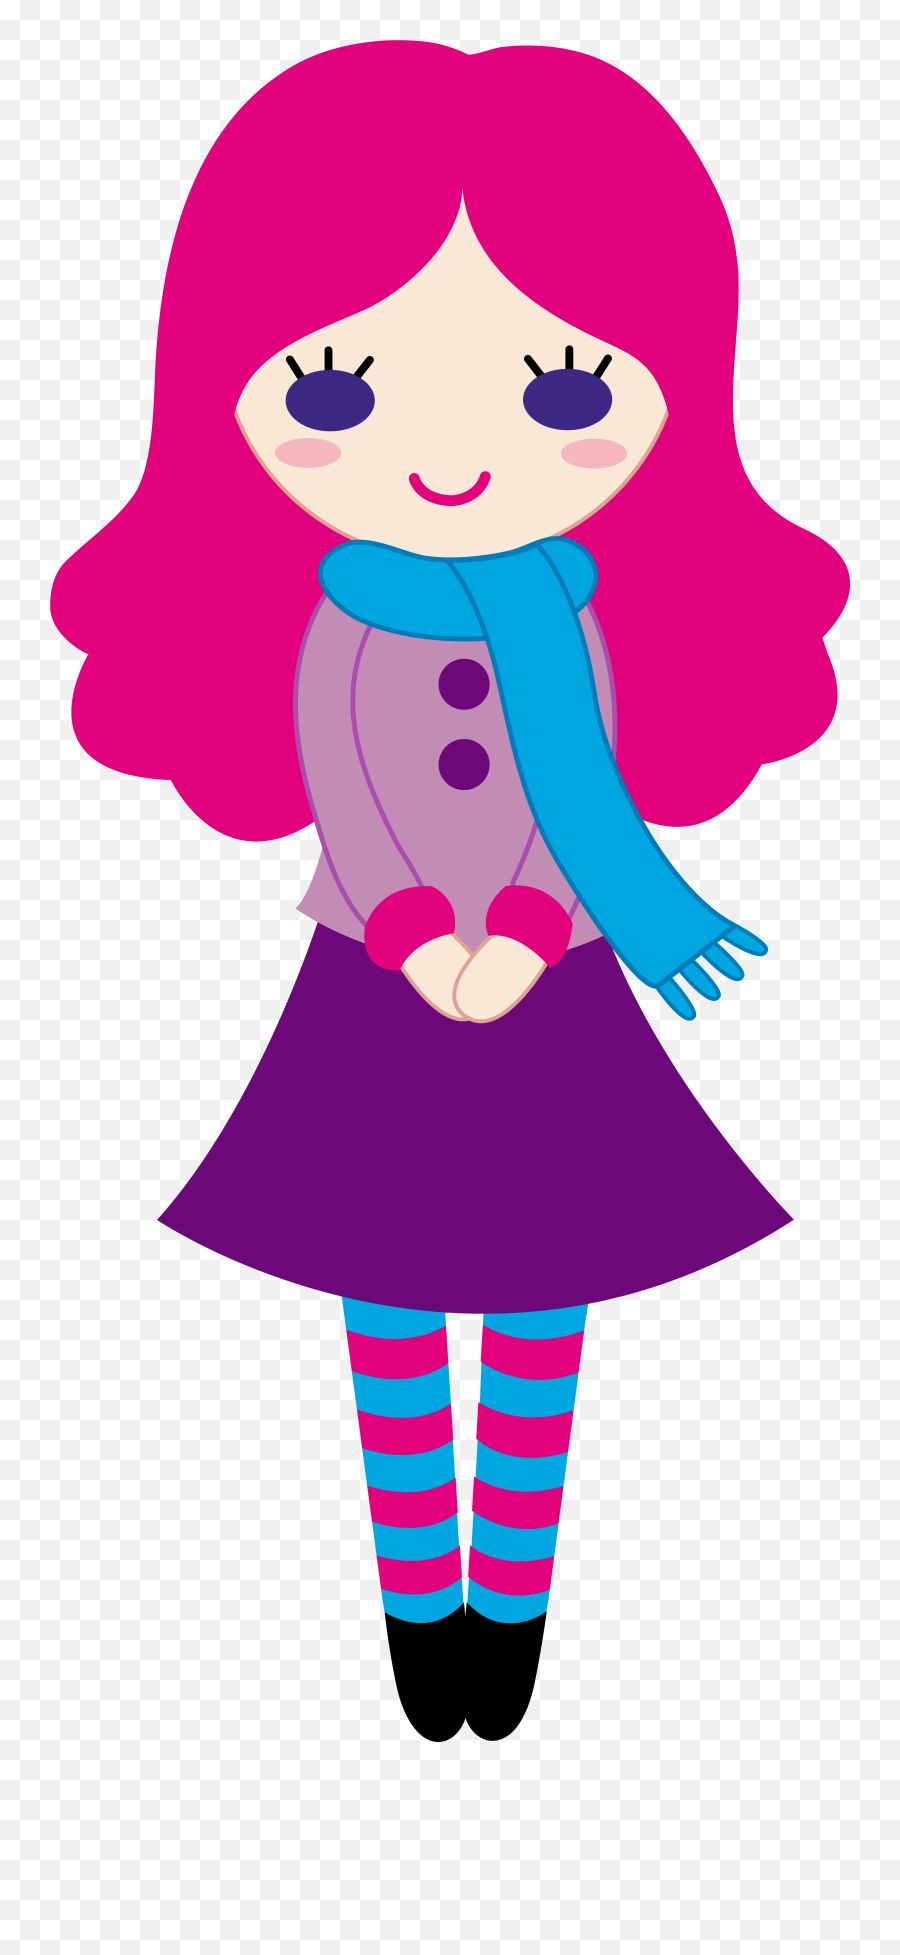 Lady Clipart Eyes Lady Eyes - Cute Girl Clipart Emoji,Lady And Pig Emoji